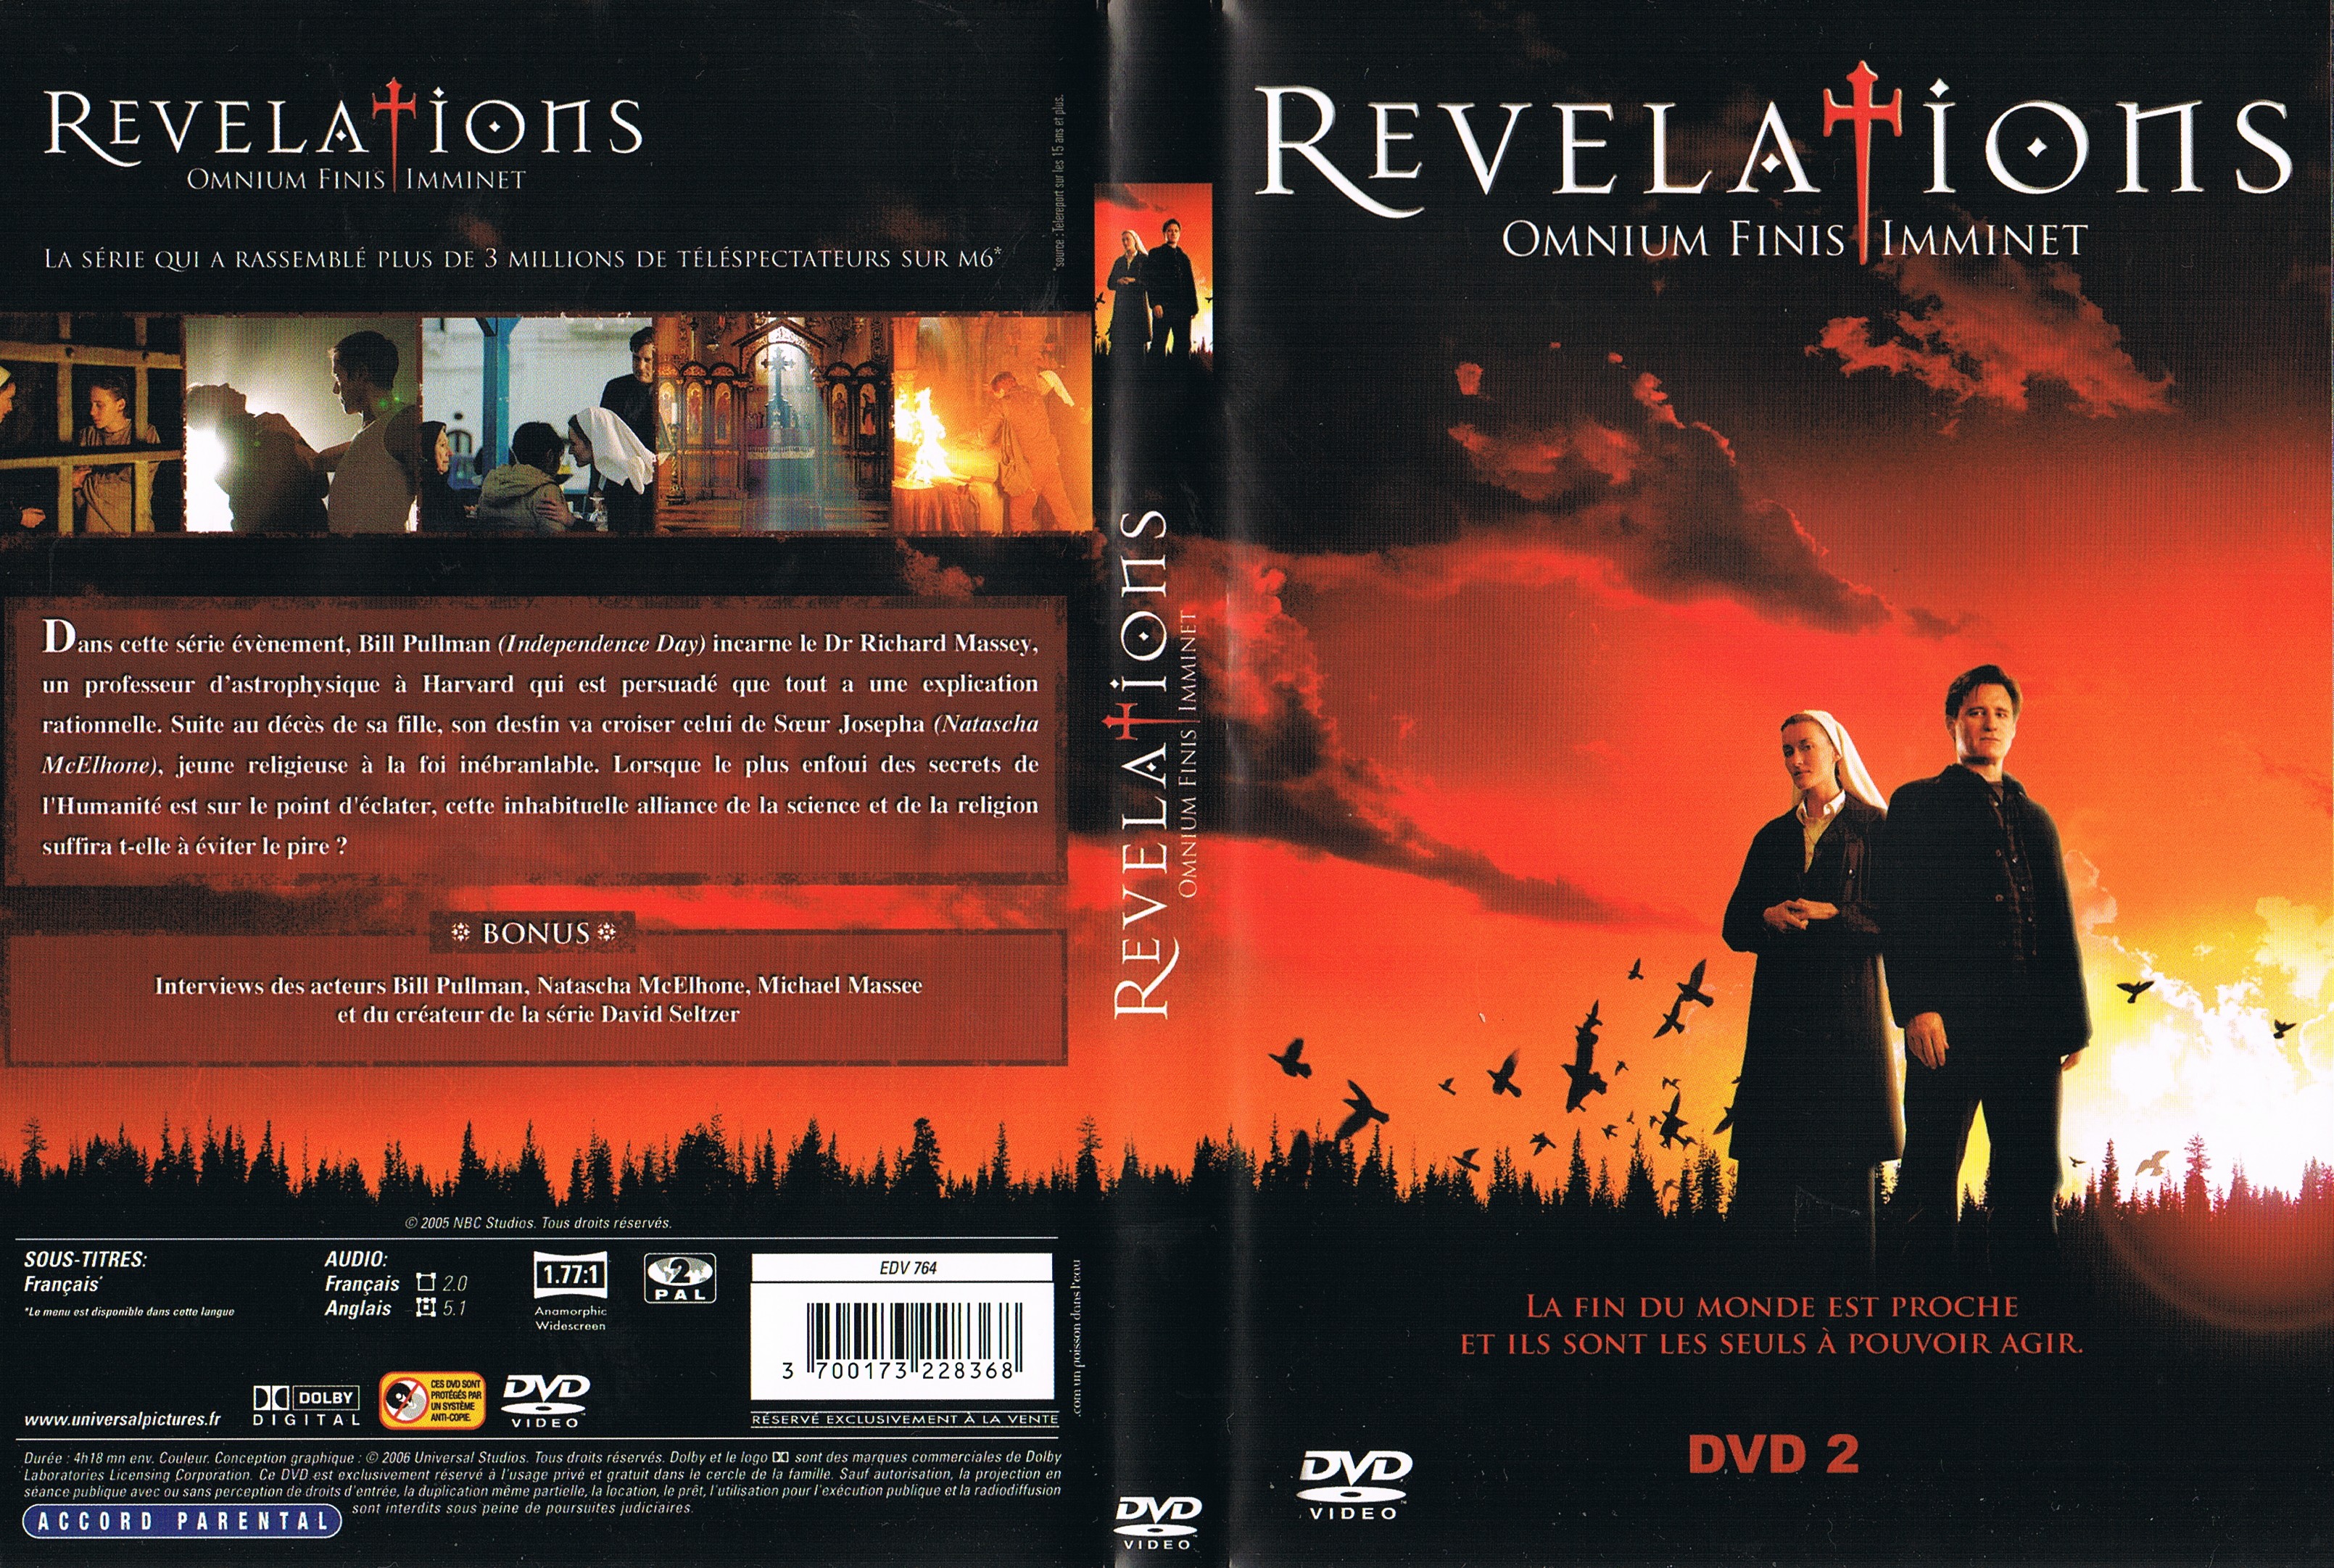 Jaquette DVD de Revelations DVD 2 (Série TV) - Cinéma Passion